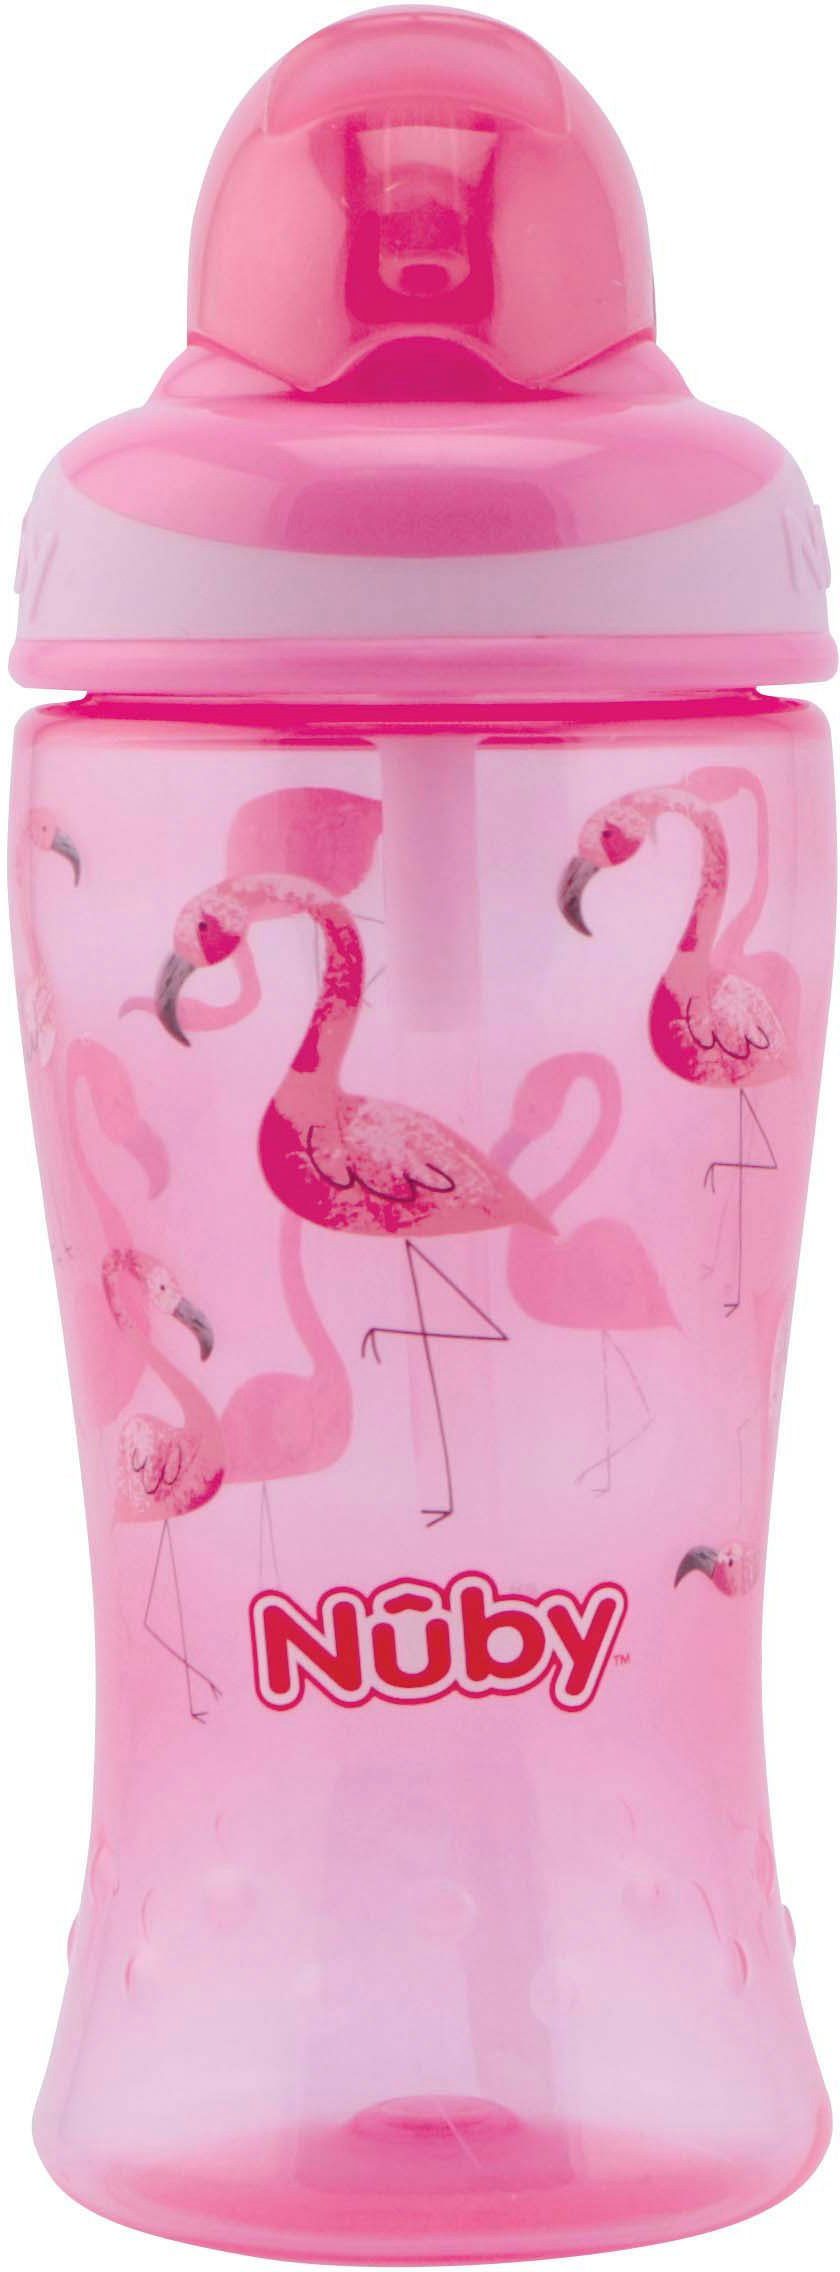 Nuby Trinkflasche pink